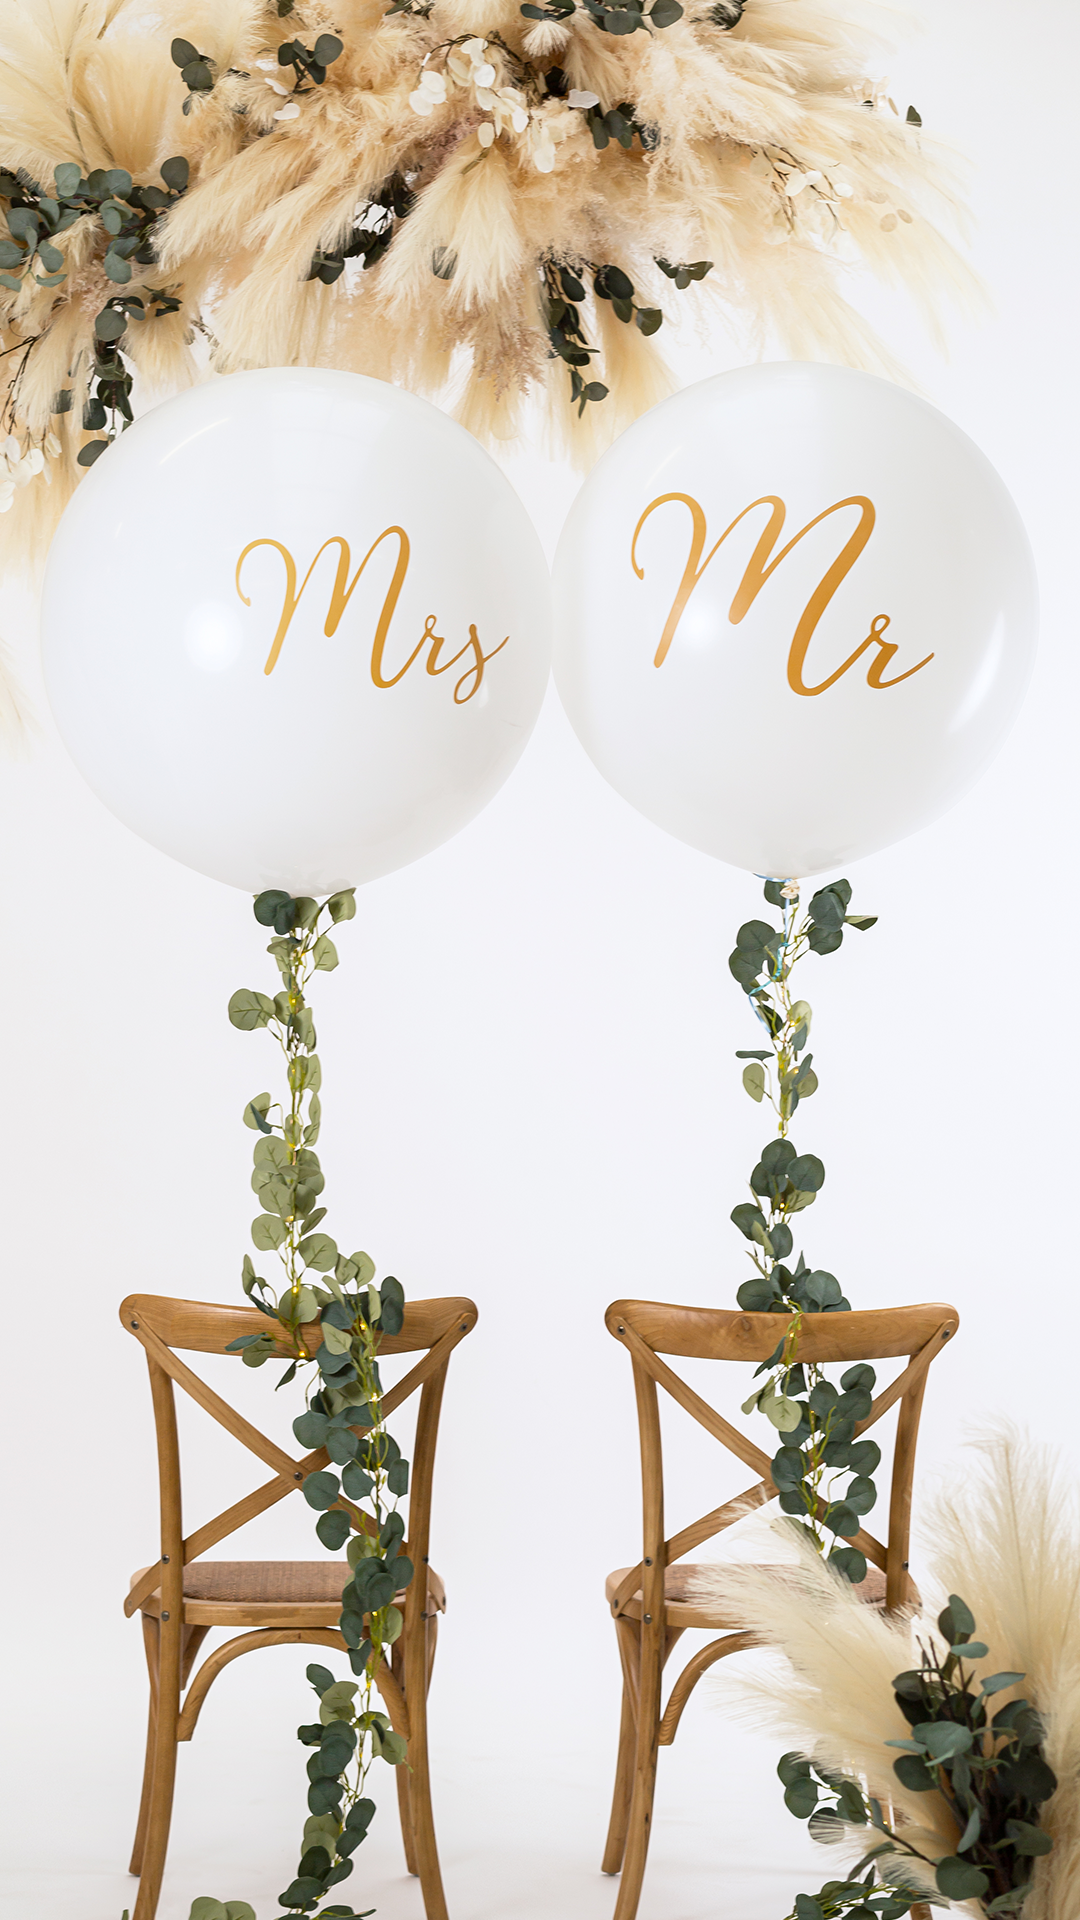 Heliumballon "Mr" und "Mrs" am Brautpaar-Stuhl